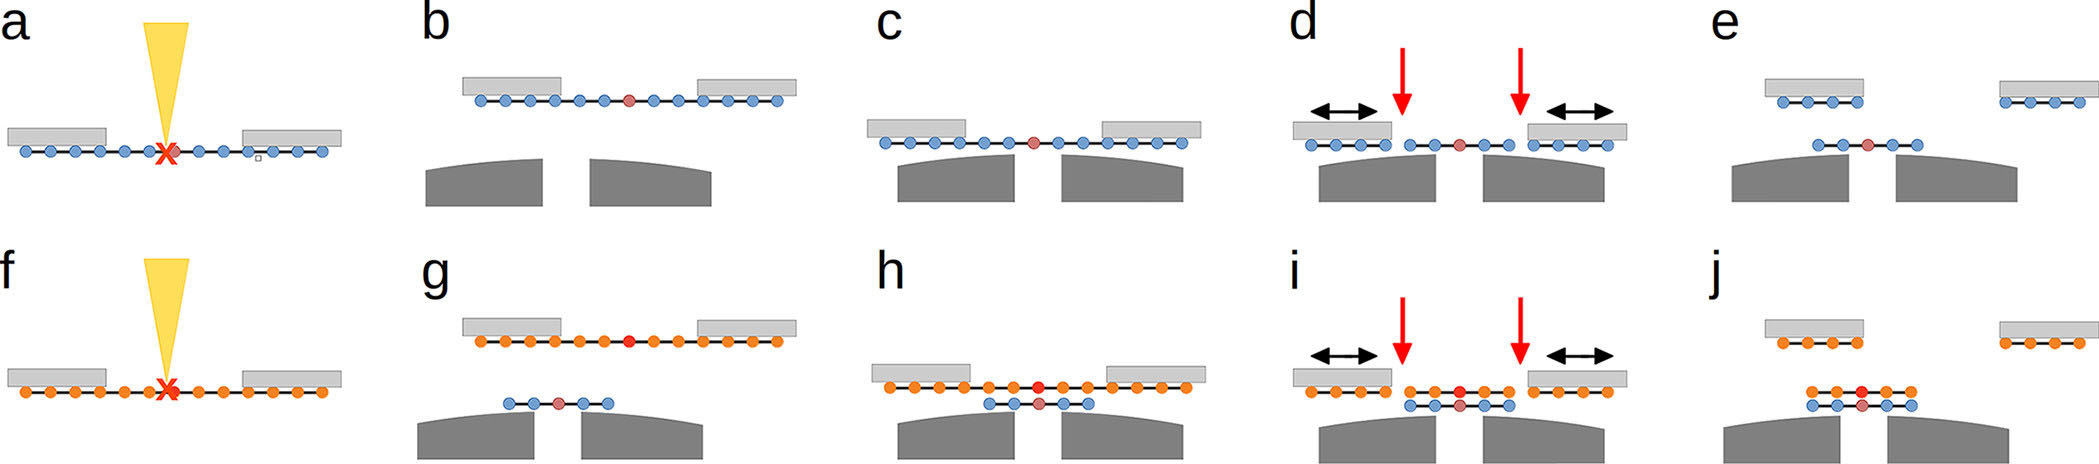 Schematic of the stacking process for 2D van der Waals heterostructures